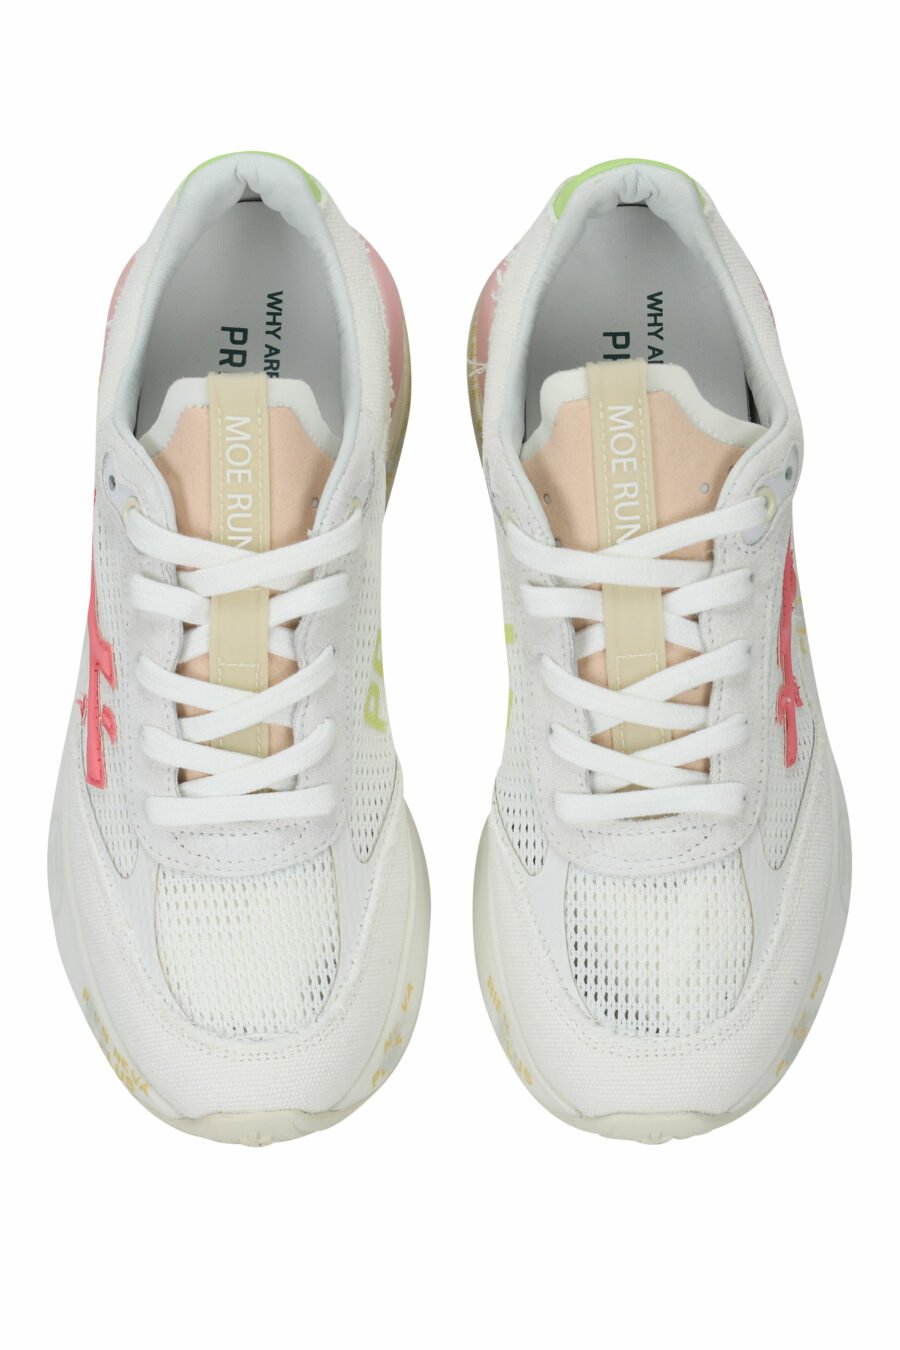 Zapatillas blancas con detalles en rosa y verde "MOERUND 6736" - 8053680381015 4